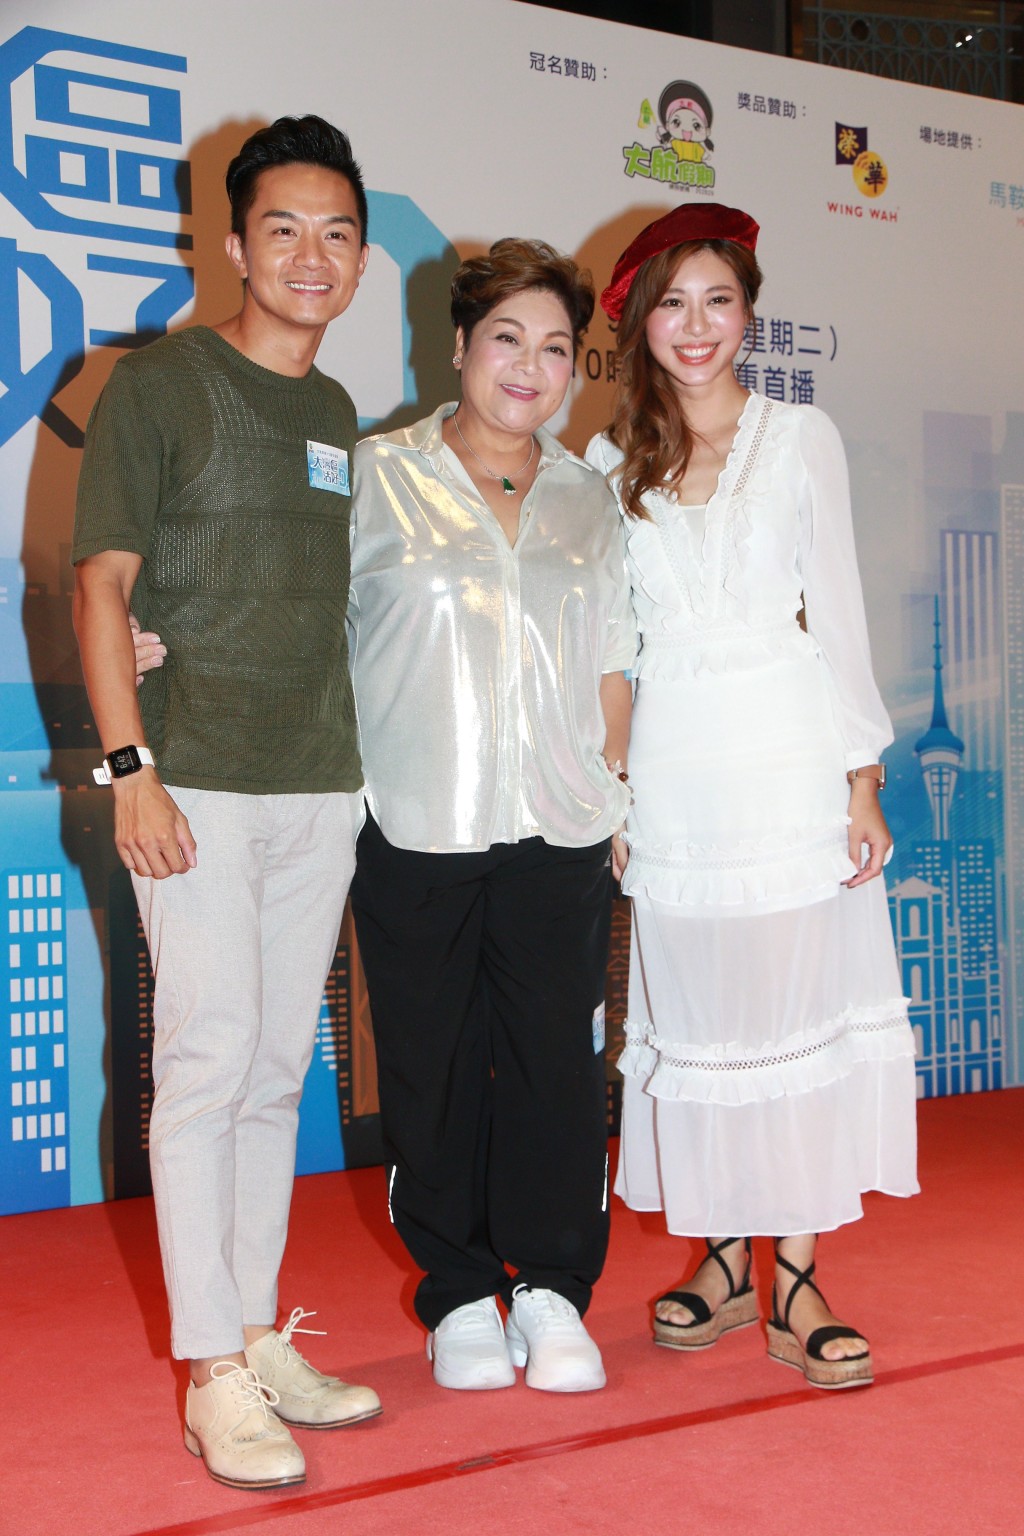 胡諾言近年較多做主持，他透露會繼續拍TVB節目。